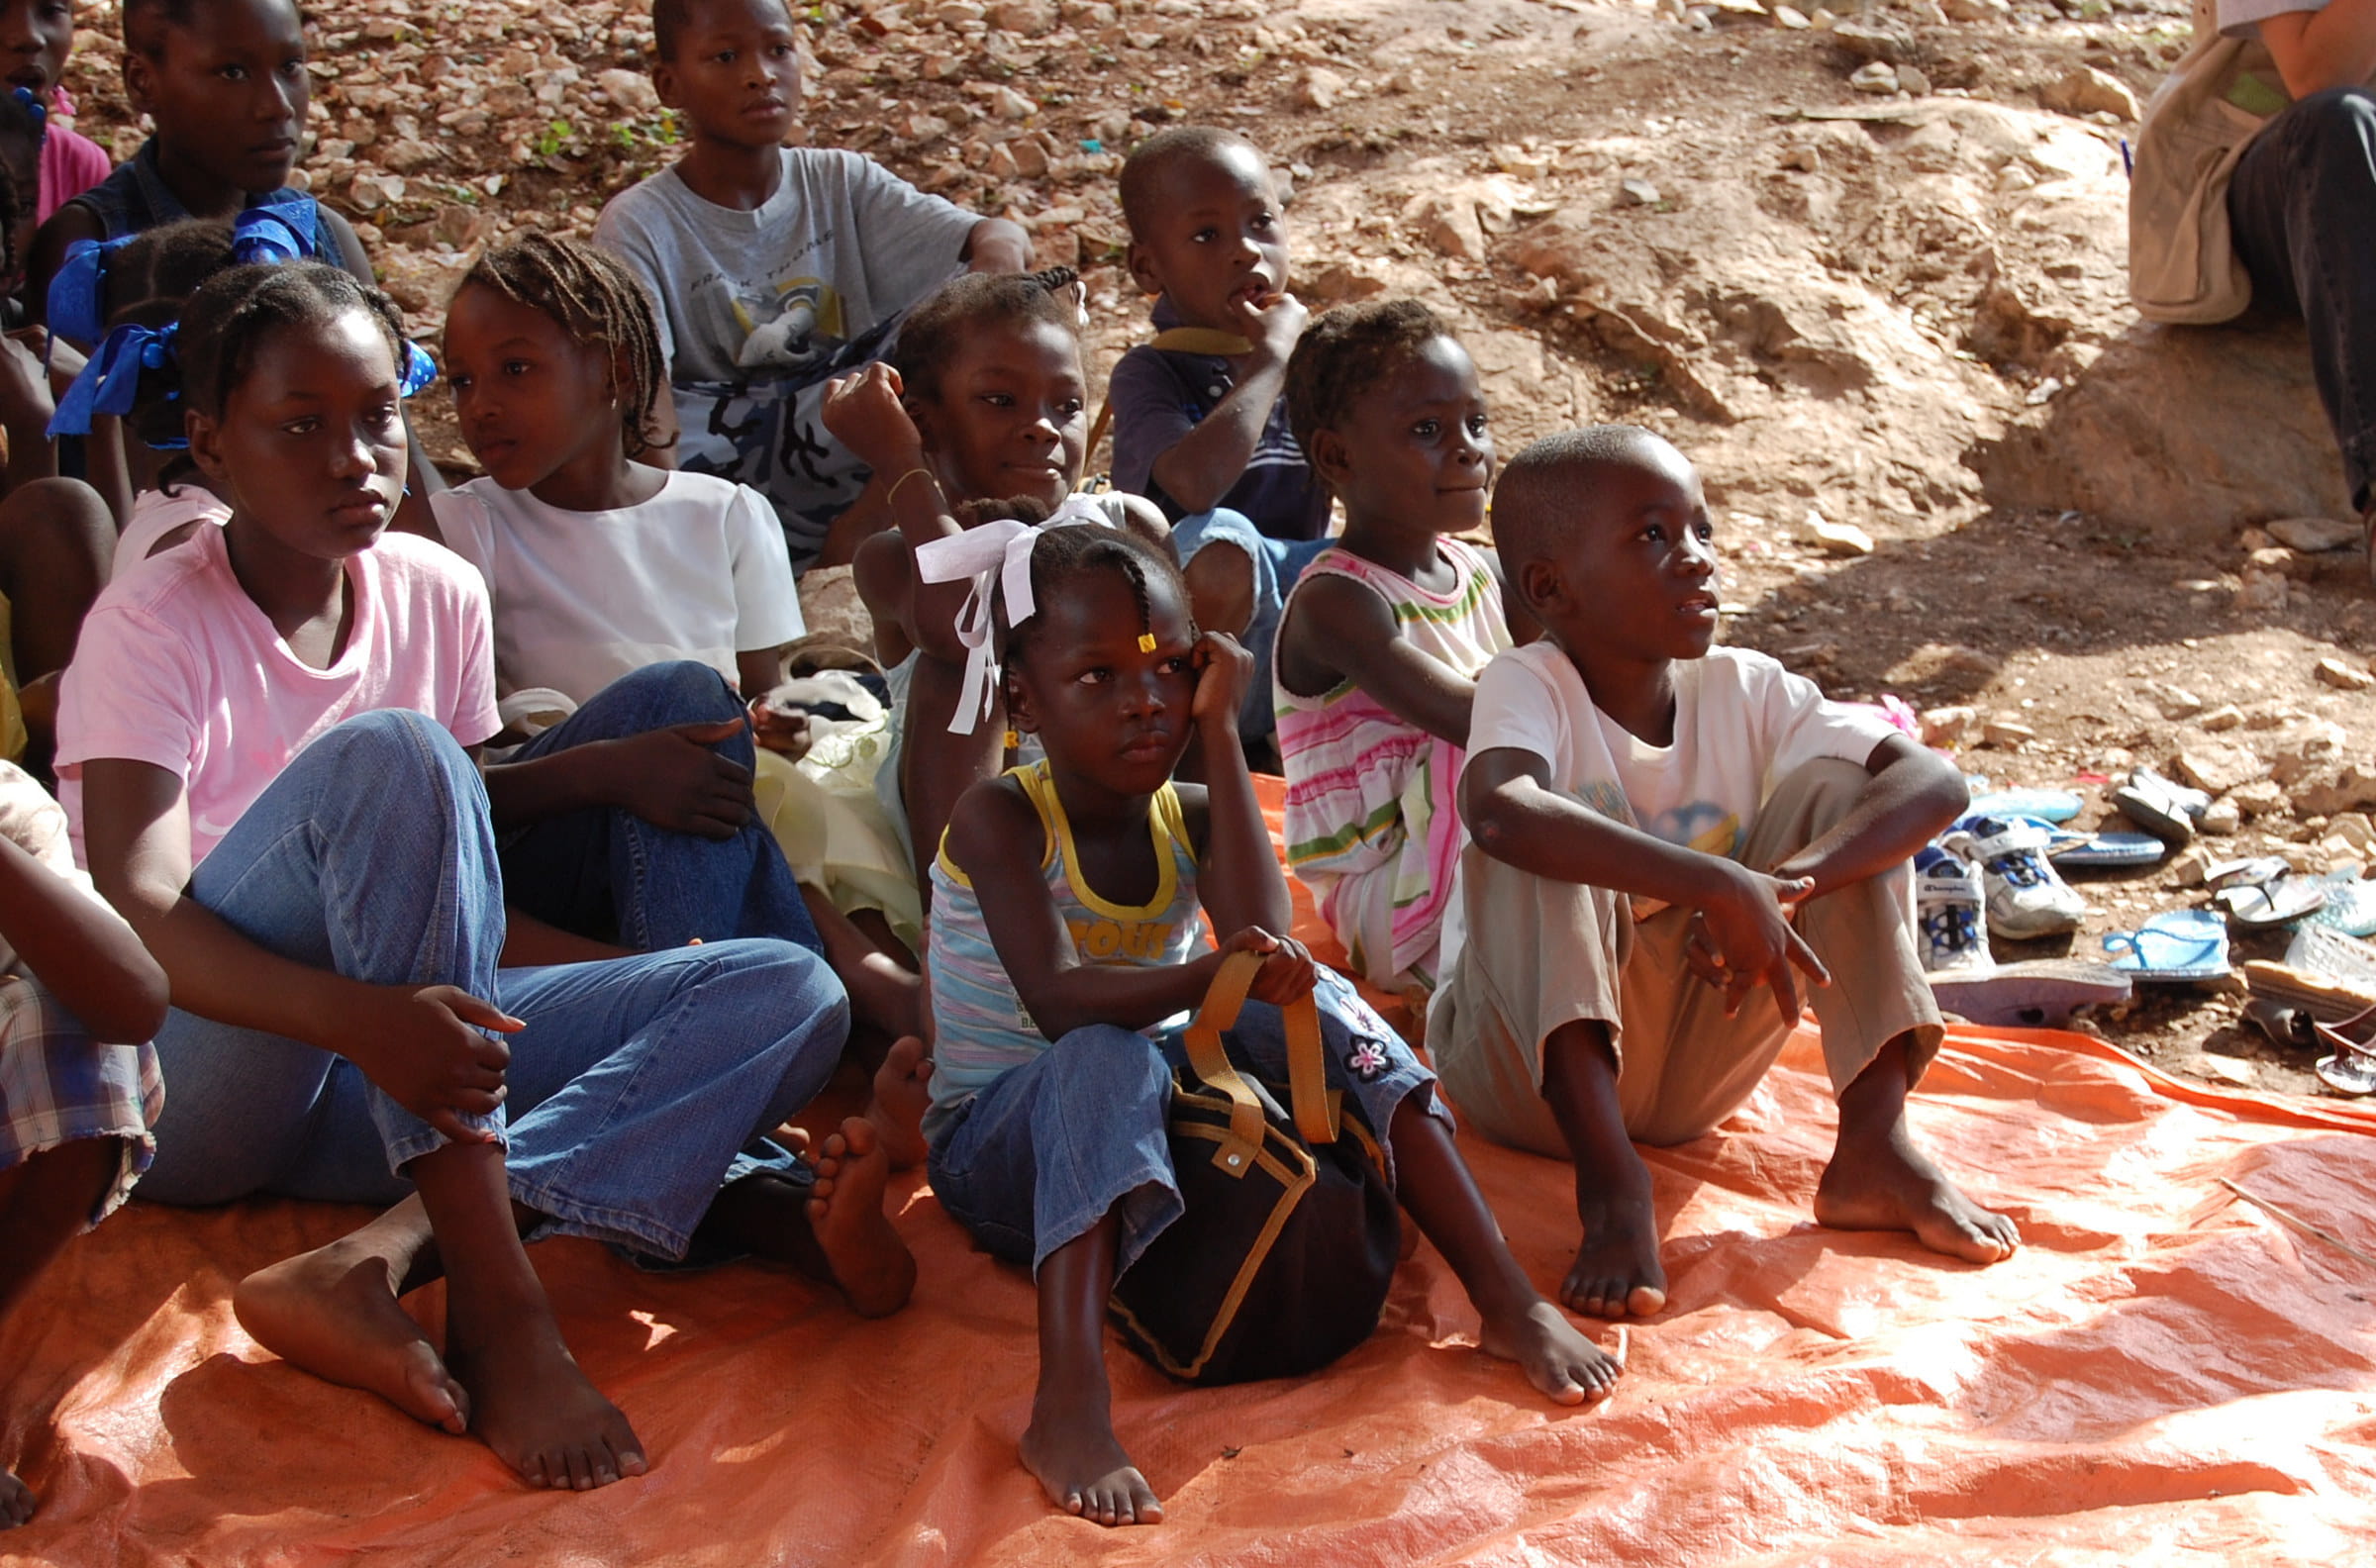 Mädchen und Jungen aus Haiti sitzen auf dem Foto. Fast die Hälfte der knapp drei Millionen Mädchen und Jungen leidet unter akutem Hunger. Schulen sind geschlossen und die Gewalt gegen Kinder nimmt verheerende Ausmaße an. (Foto: Erhard Stückrath/Kindernothilfe)